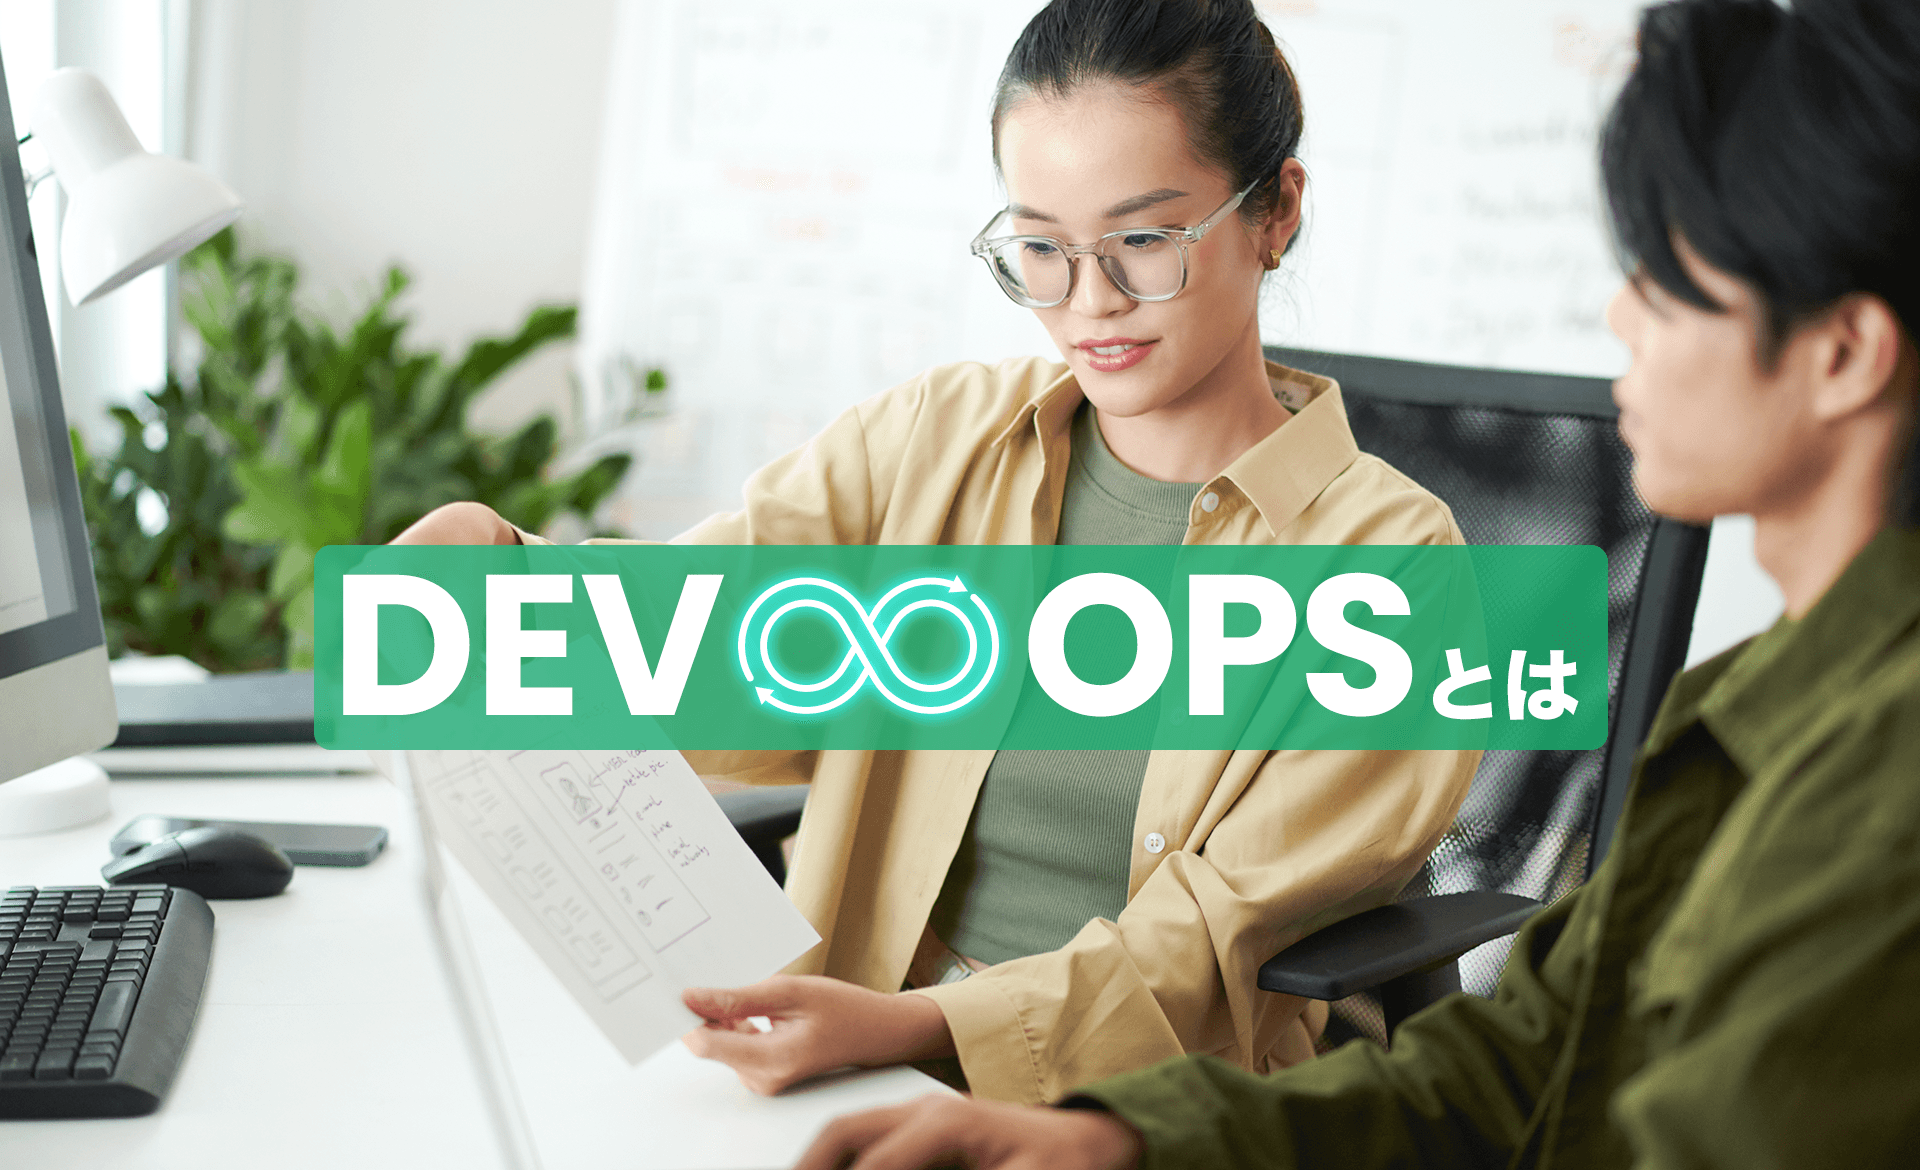 DevOpsとは？アジャイル開発との違い、導入するメリット・デメリットについて解説